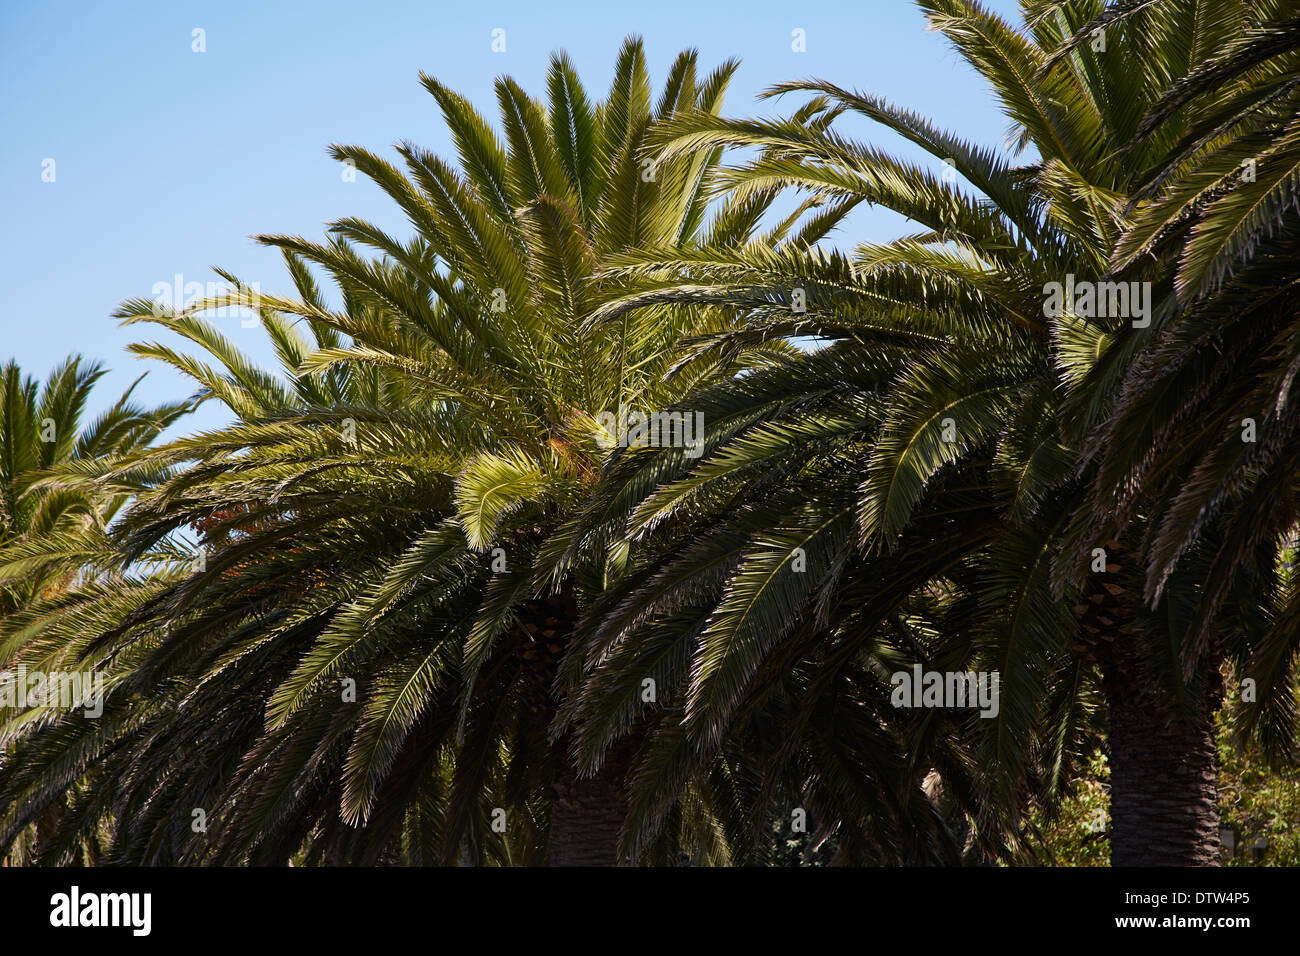 Close up détails de feuilles de palmier avec ciel bleu dans la distance Banque D'Images